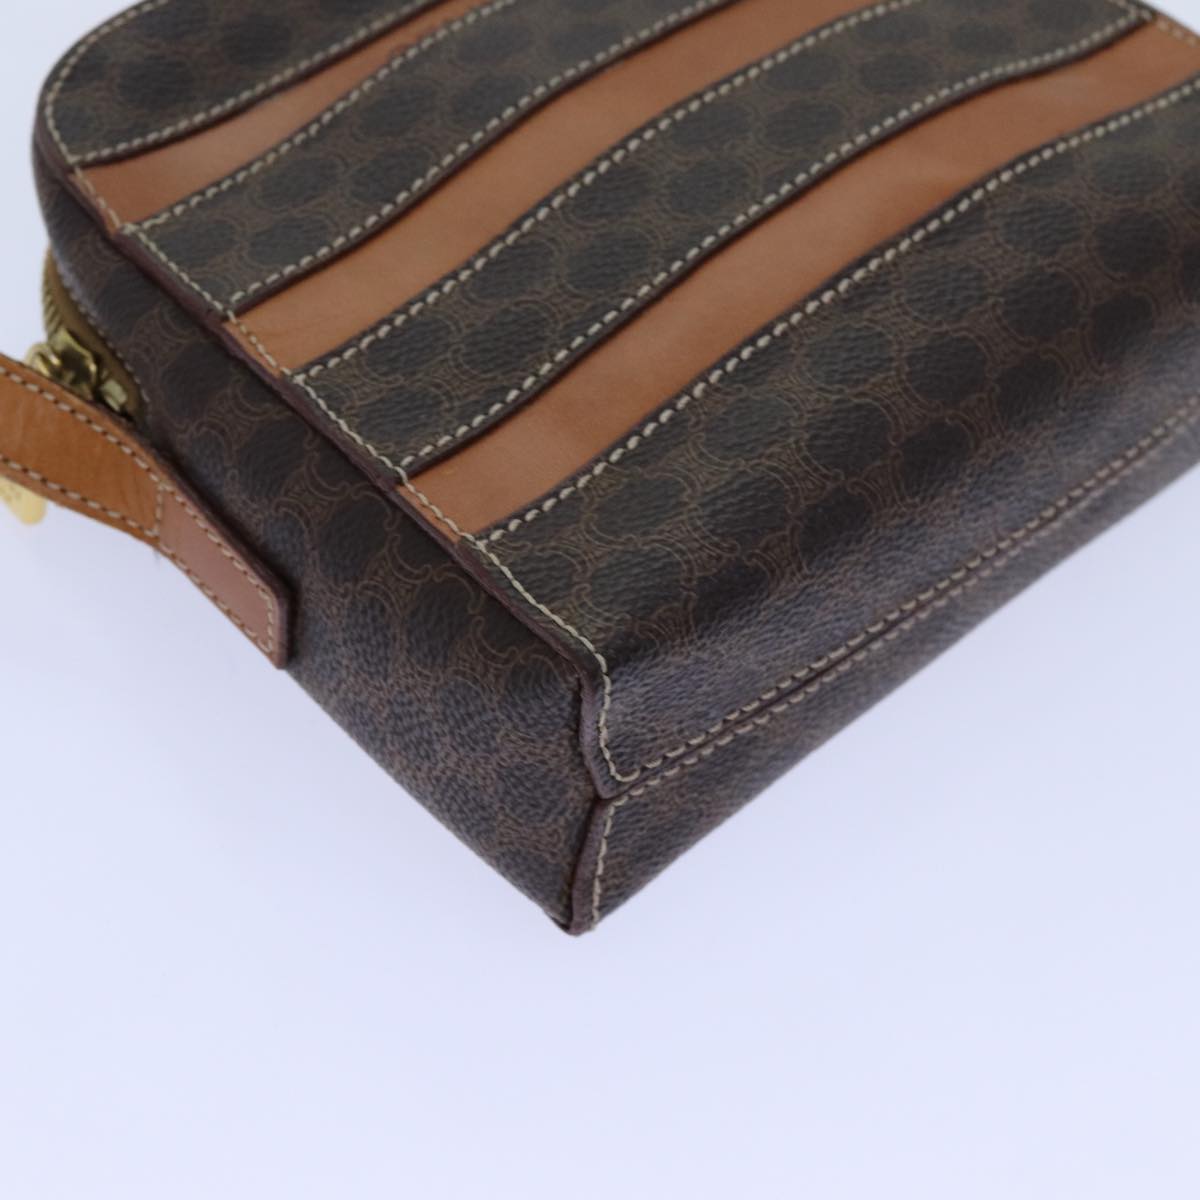 CELINE Macadam Canvas Shoulder Bag PVC Brown Auth 71879